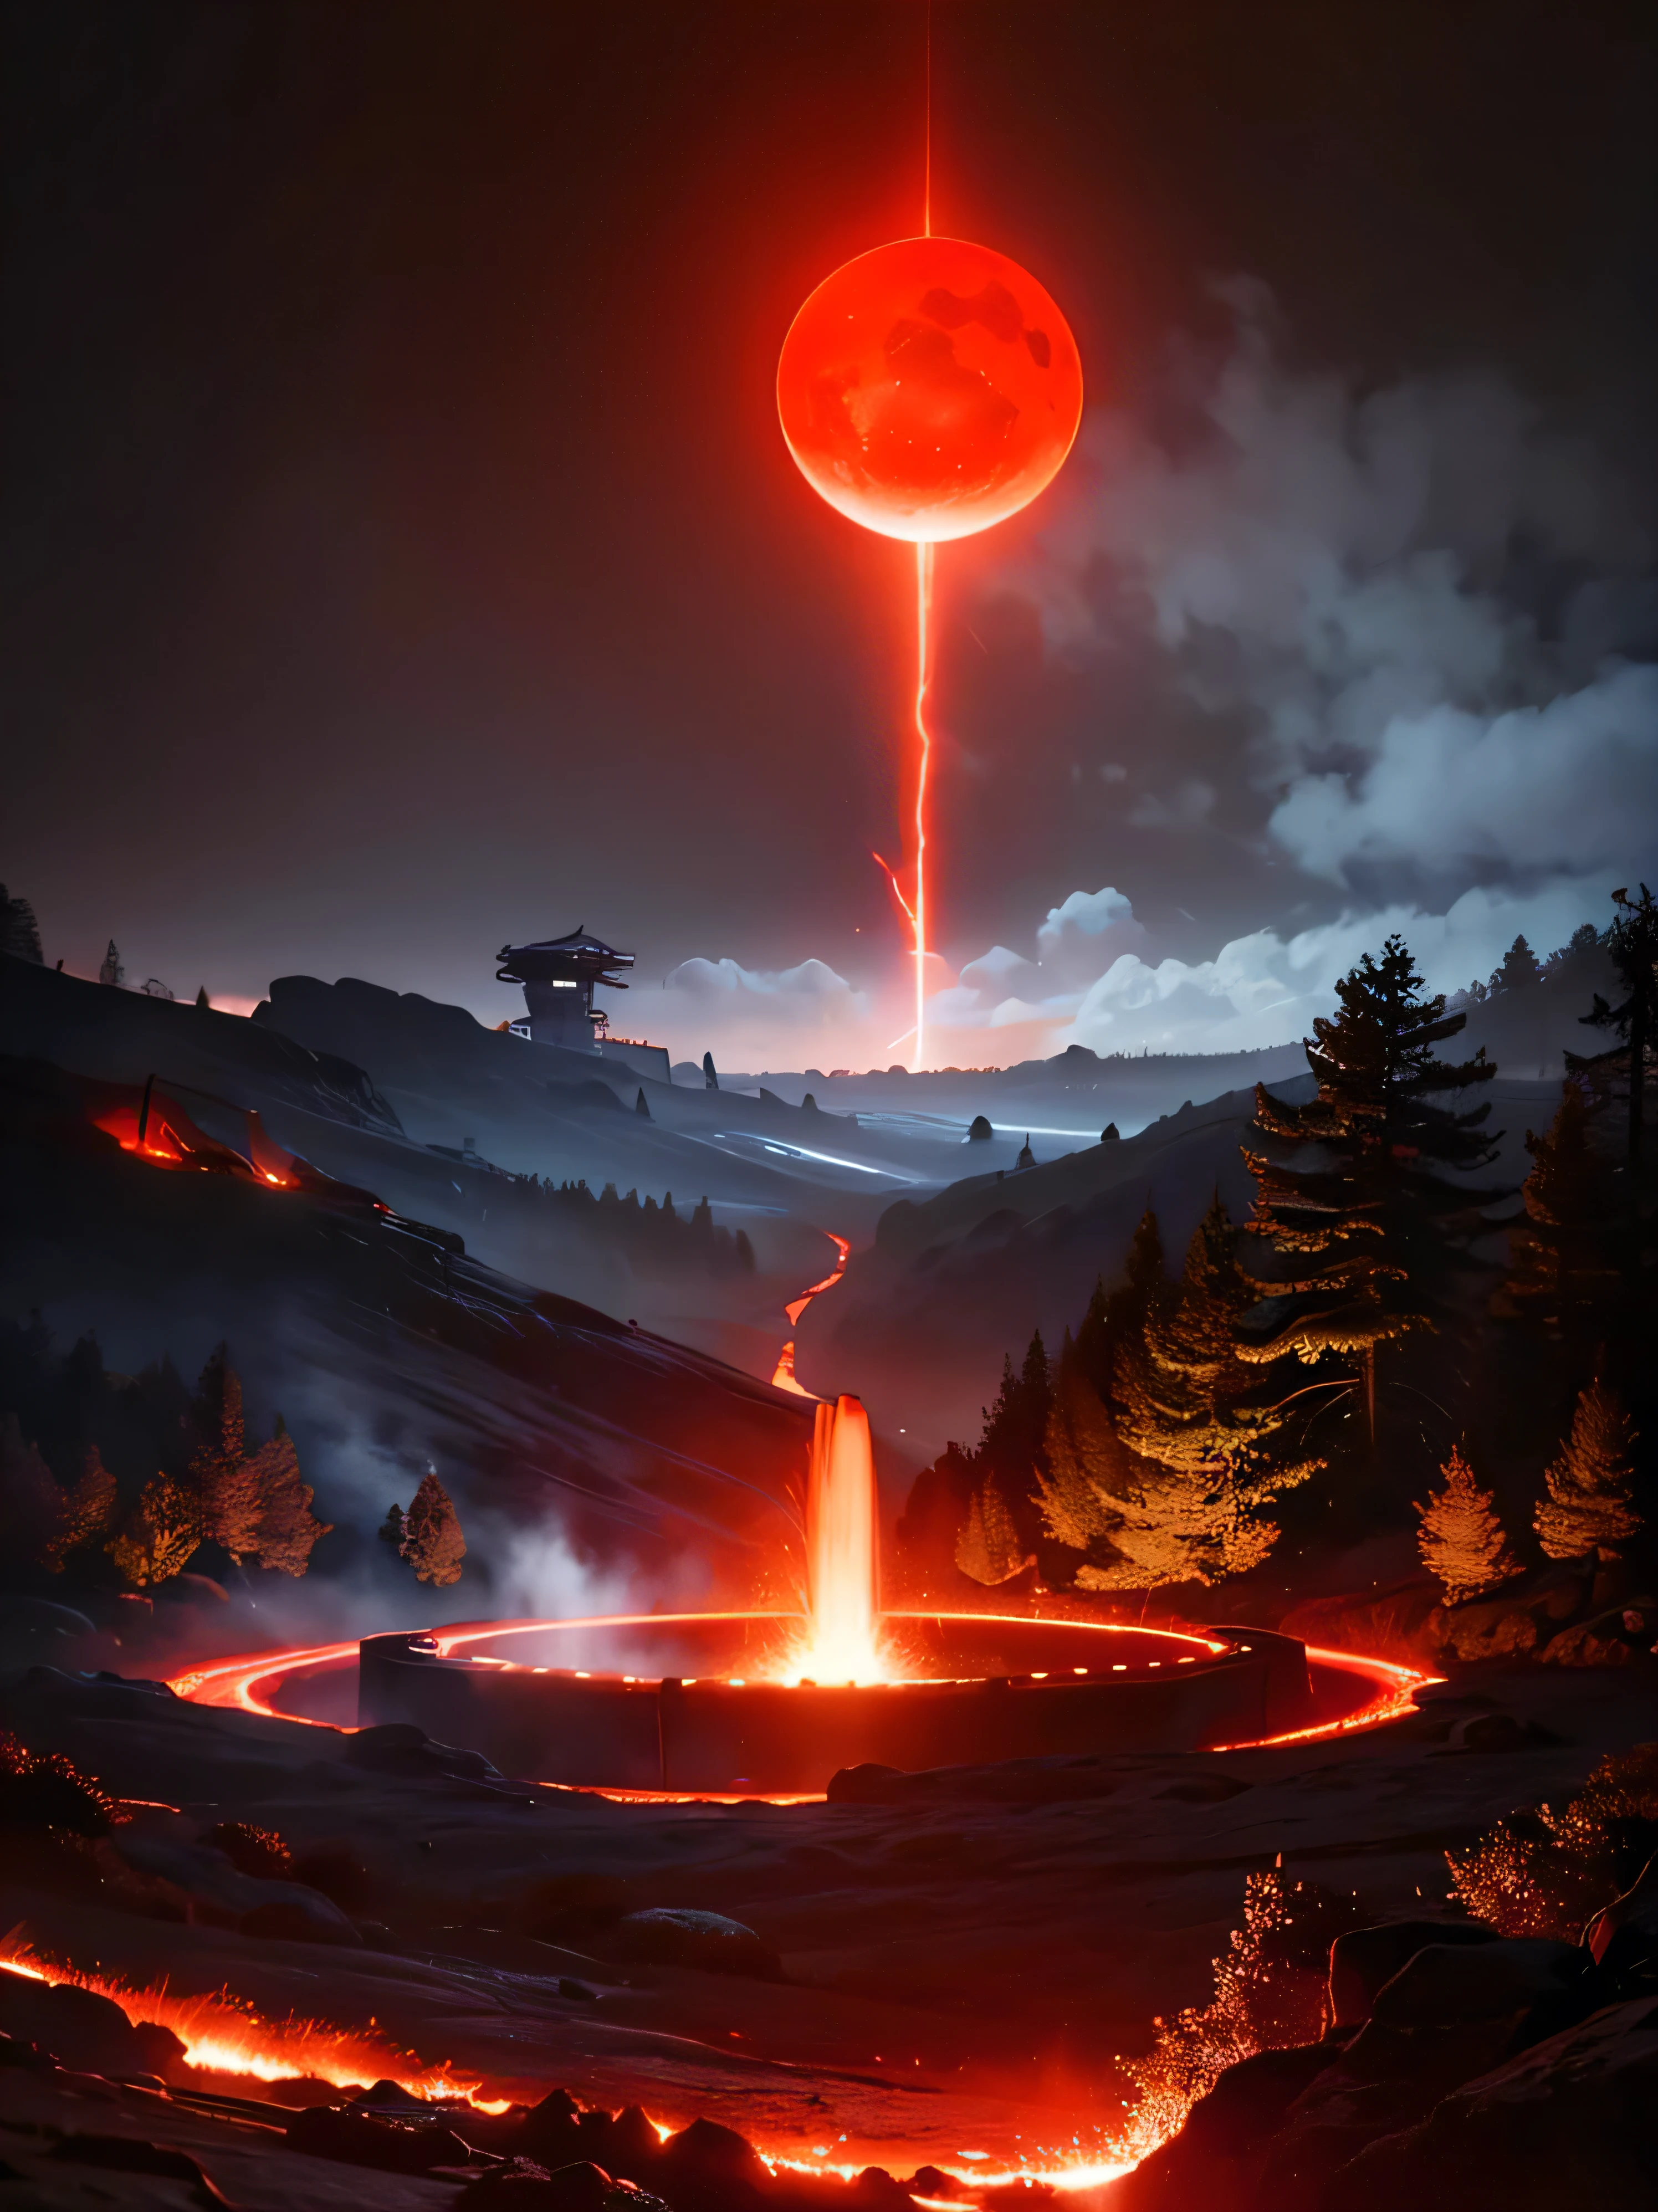 内部有红灯的控制论地球, 机械化地壳, 地球涌出熔岩, 地球的红色地幔清晰可见, 空心地球, 虚拟机, 地球上遍布峡谷和山脊, 地球喷涌而出的火焰喷泉 
